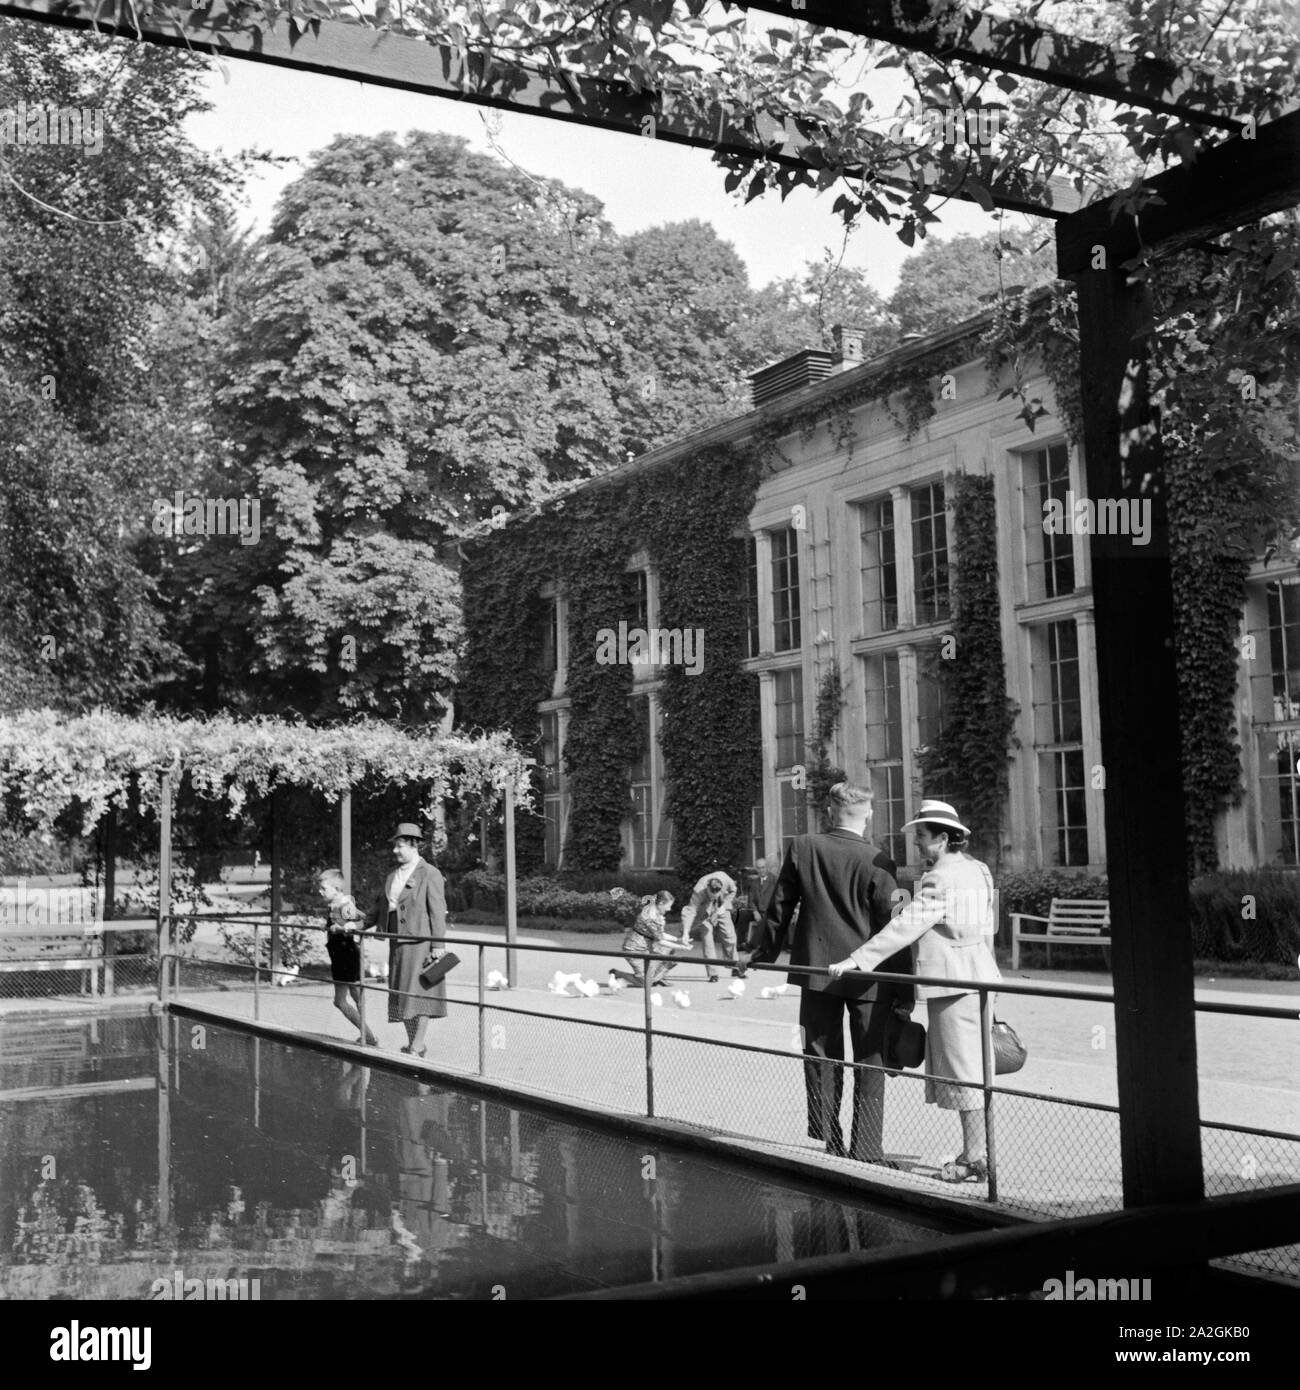 Kurgäste entspannen sich bei einem Aufenthalt in Bad Homburg, Deutschland 1930er Jahre. Spa gli ospiti il relax passeggiando a Bad Homburg, Germania 1930s. Foto Stock